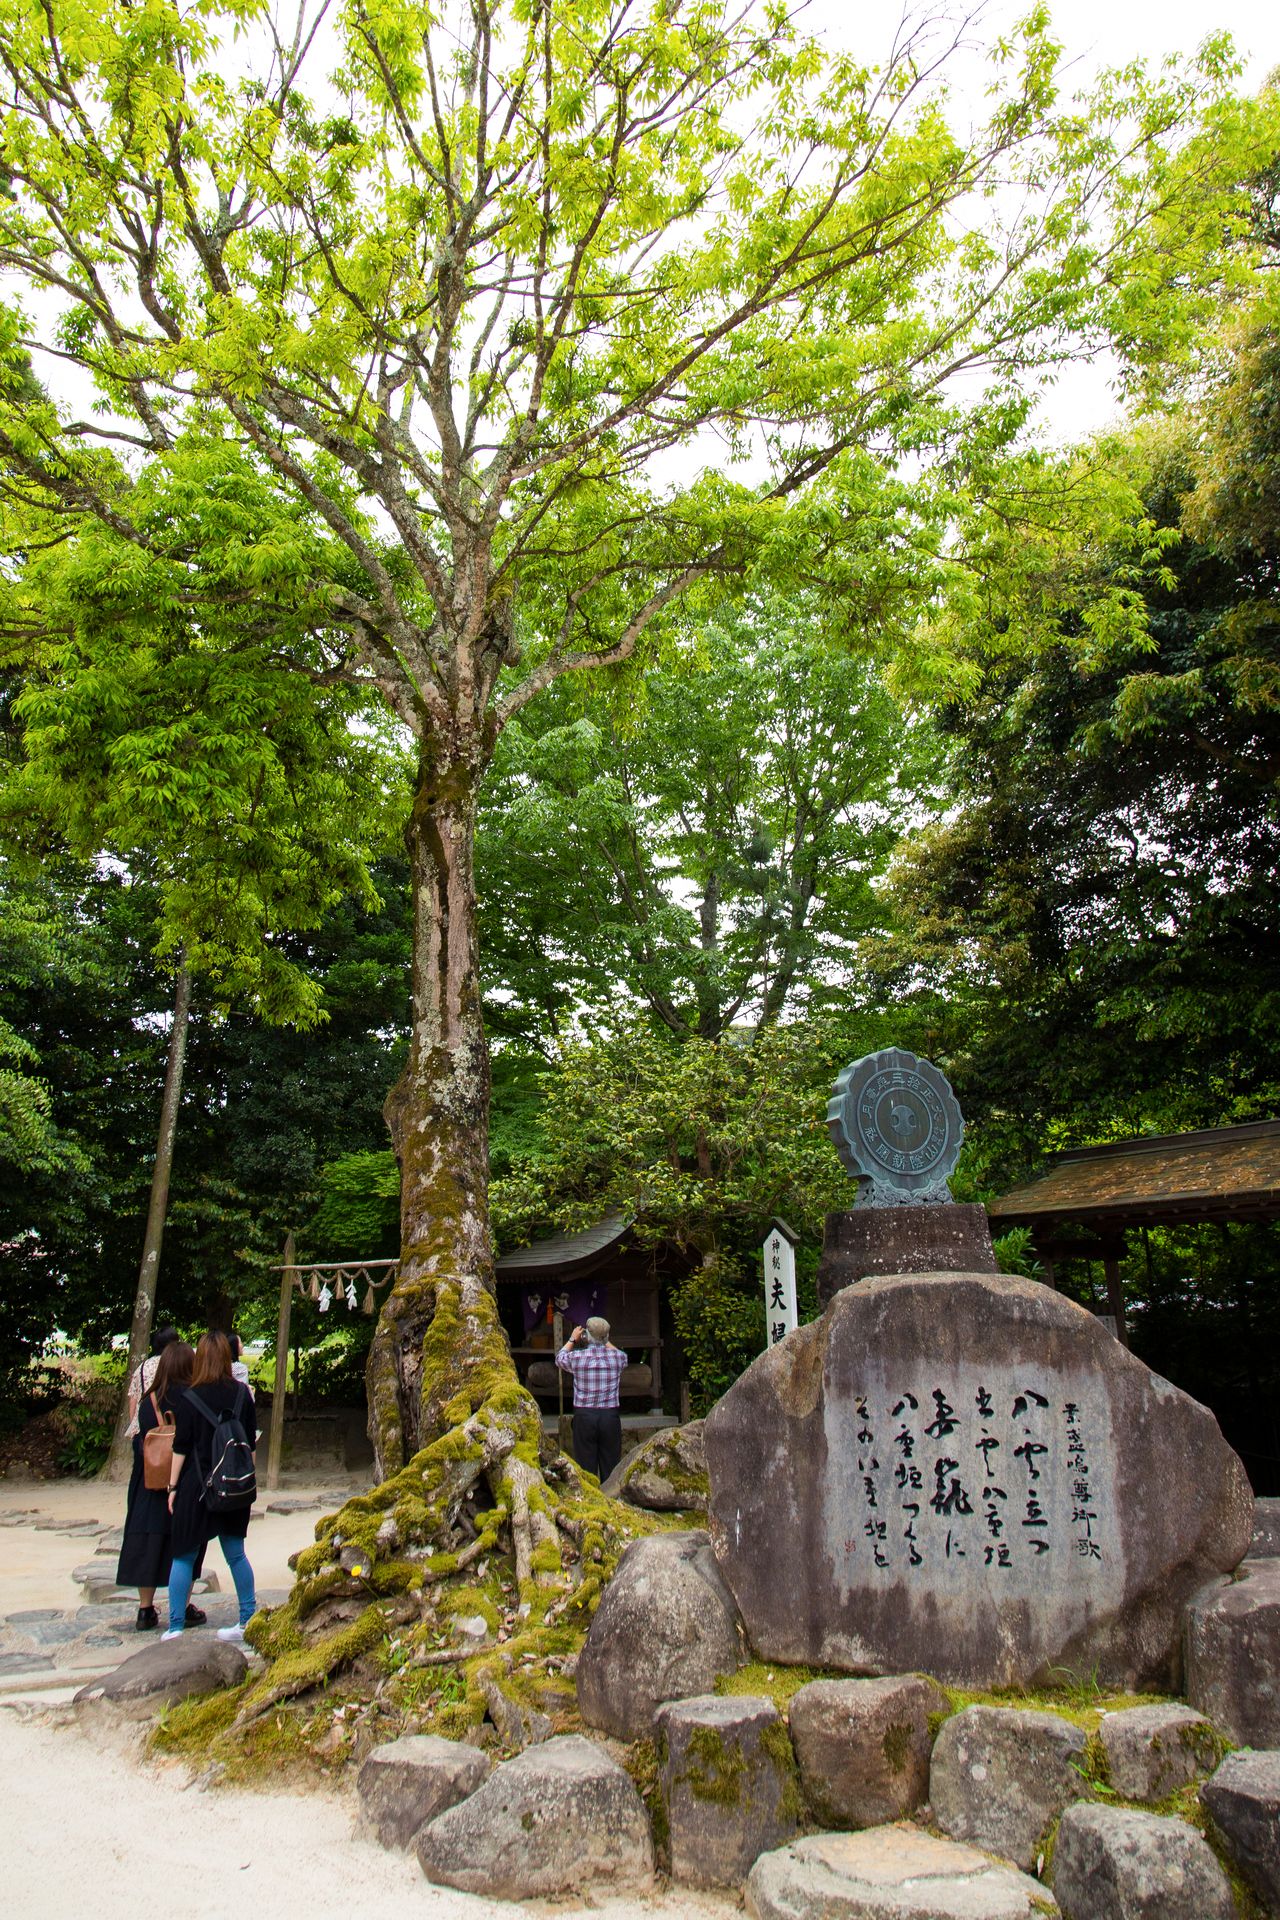 قصيدة سوسانوؤ الشهيرة منقوشة على صخرة تذكارية بالقرب من المعبد الرئيسي.